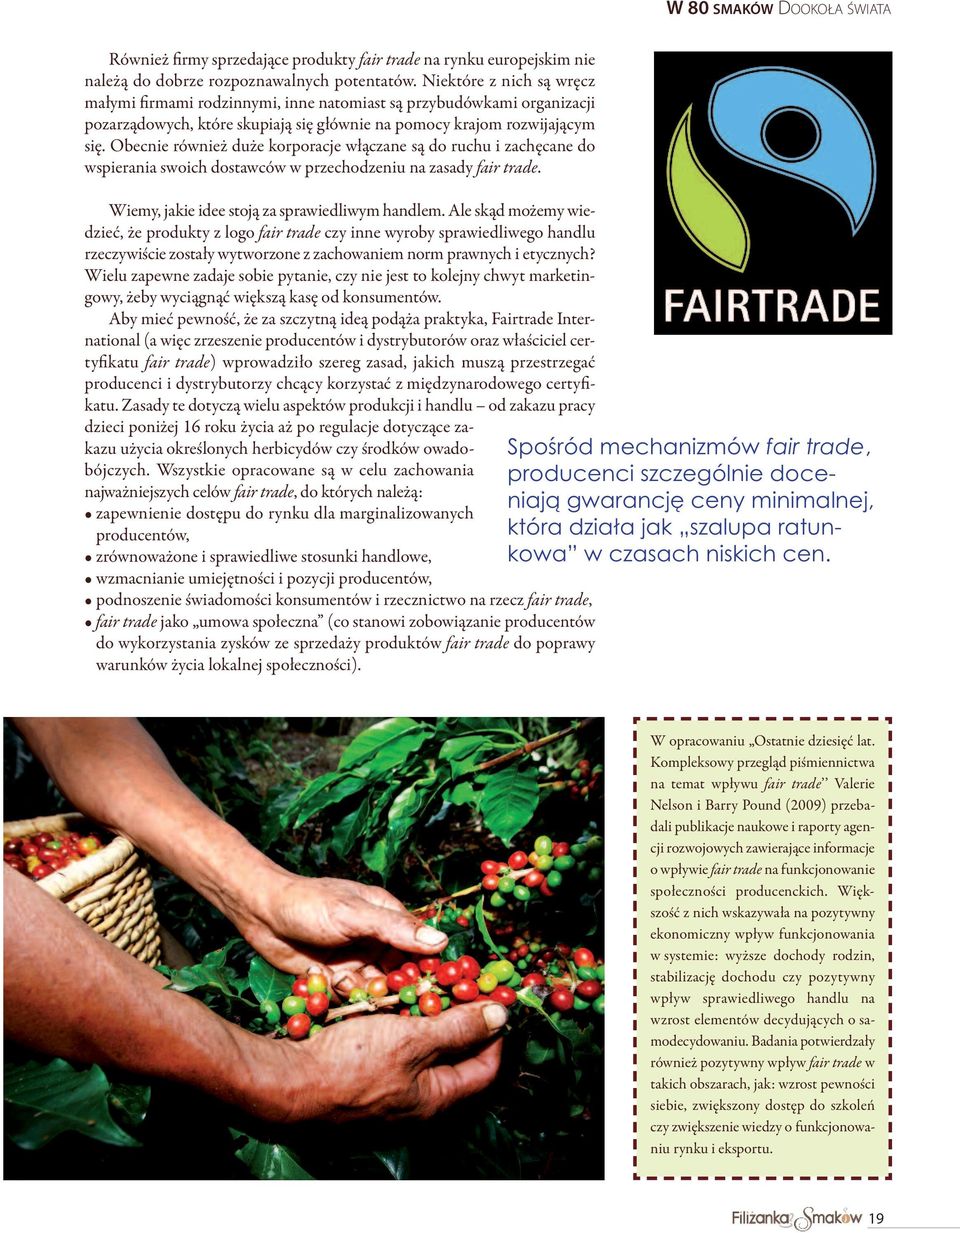 Obecnie również duże korporacje włączane są do ruchu i zachęcane do wspierania swoich dostawców w przechodzeniu na zasady fair trade. Wiemy, jakie idee stoją za sprawiedliwym handlem.